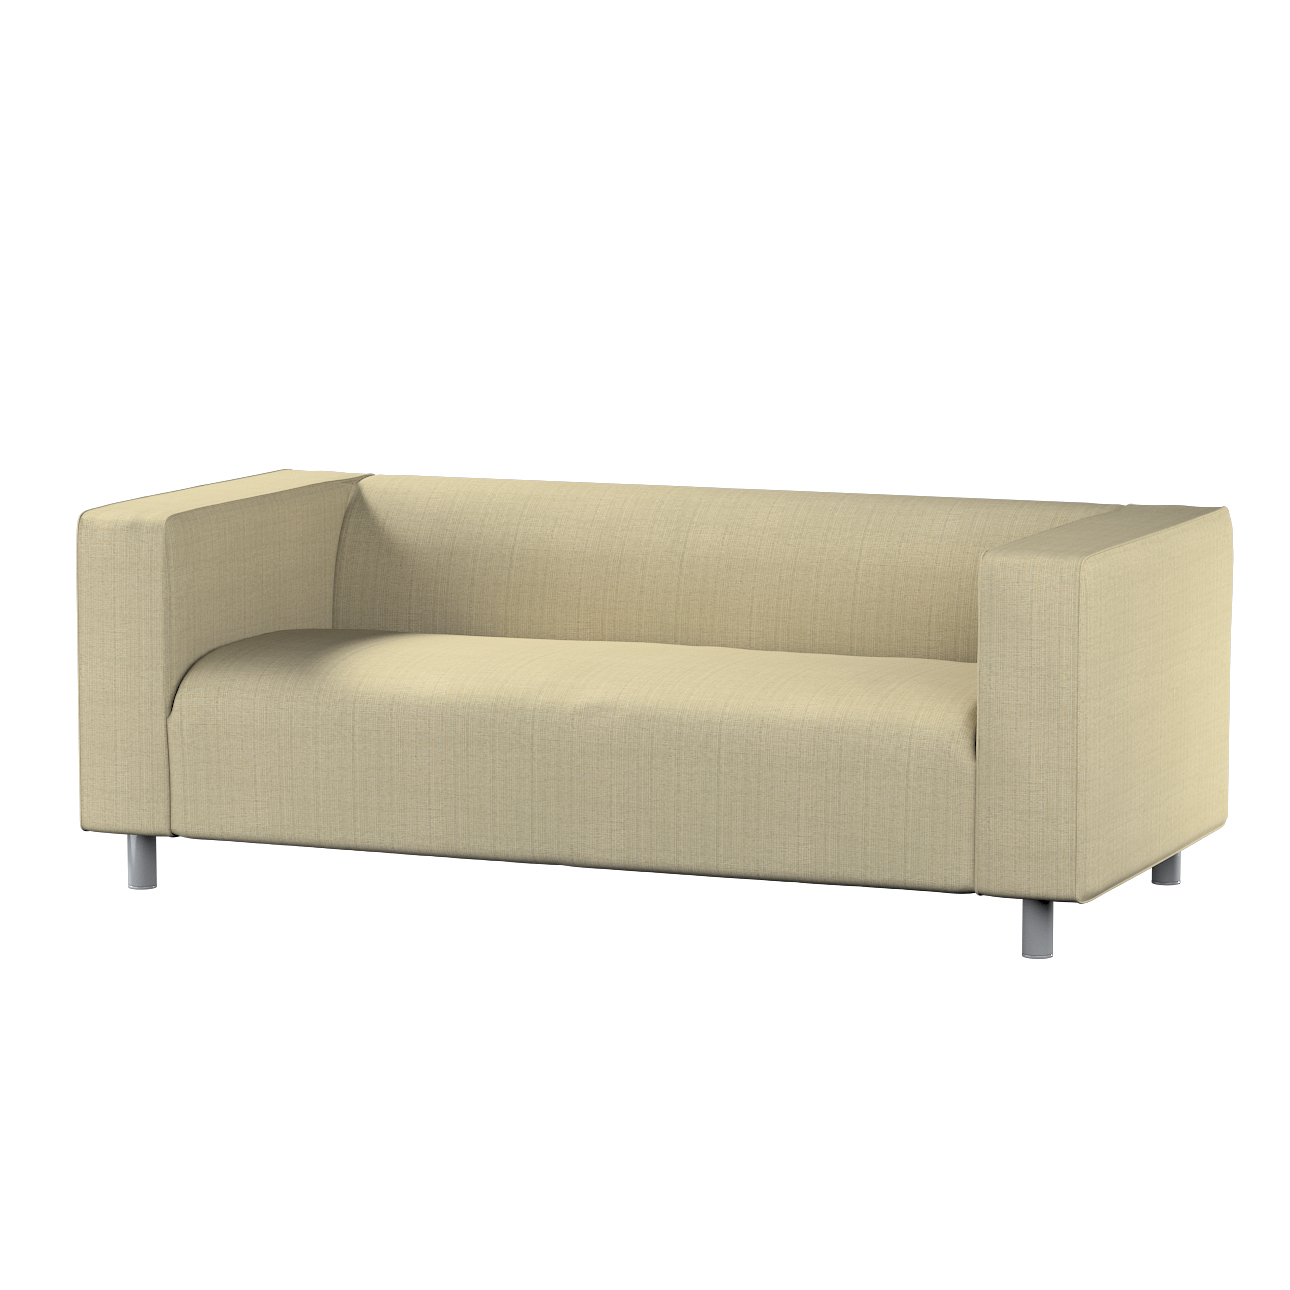 Bezug für Klippan 2-Sitzer Sofa, beige-creme, Sofahusse, Klippan 2-Sitzer, günstig online kaufen